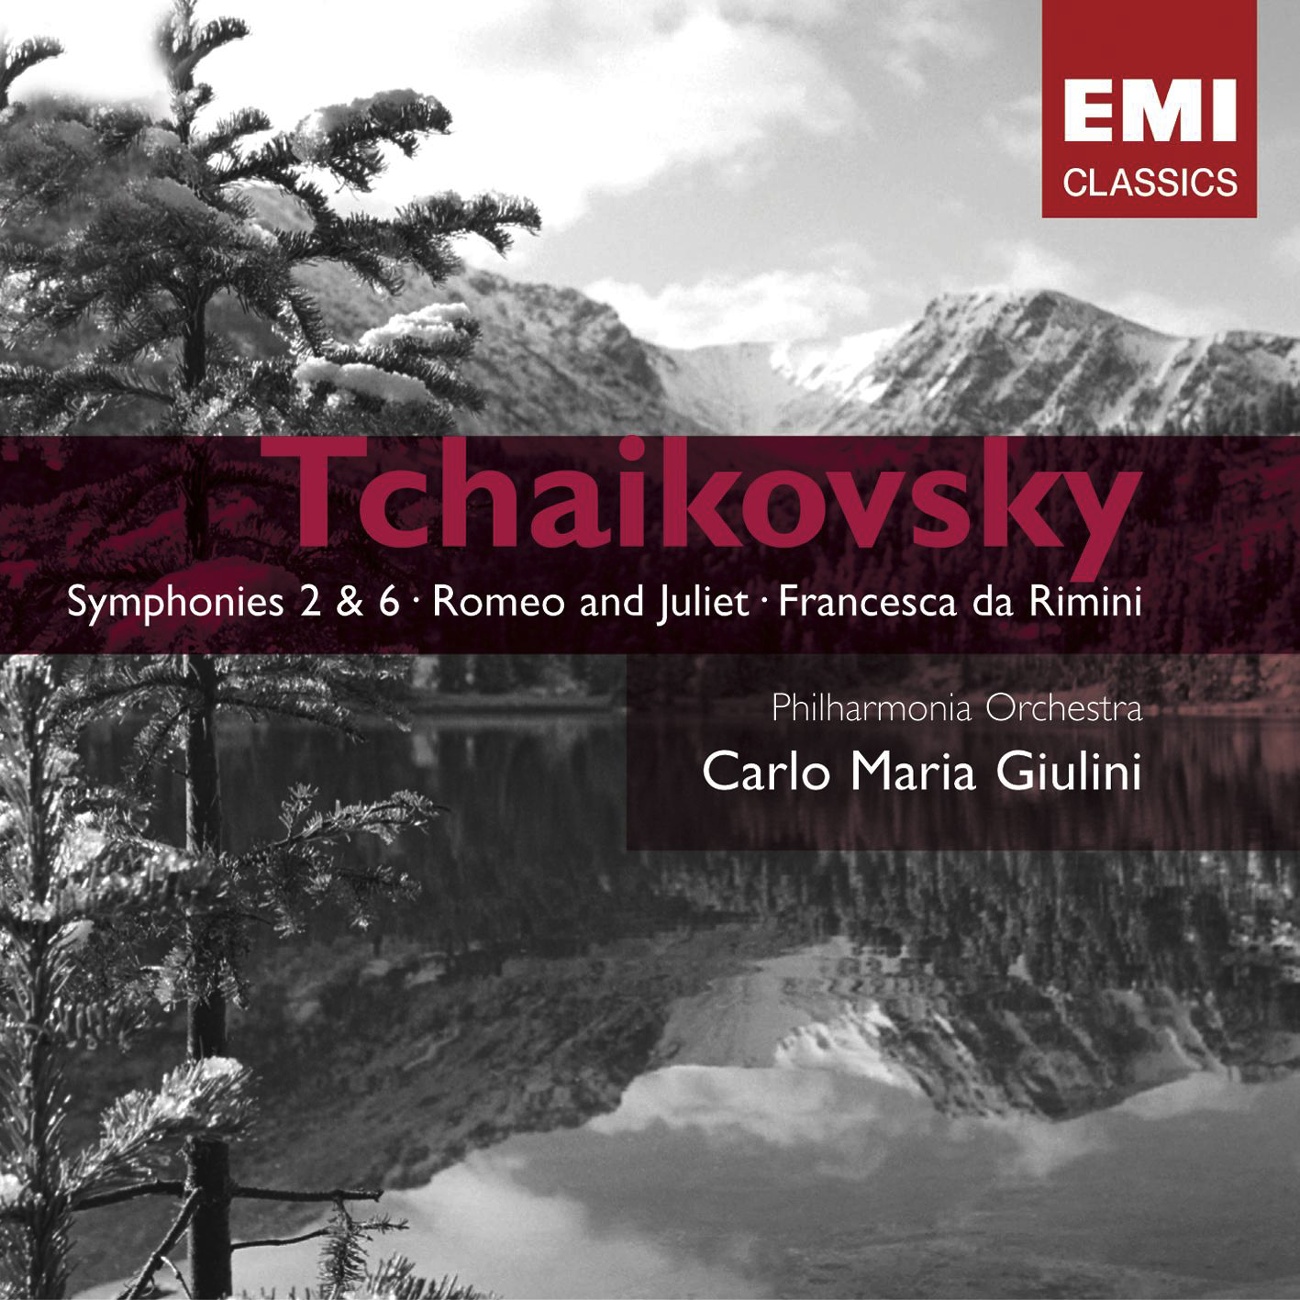 Symphony No. 2 in C minor, Op. 17 ("Little Russian") (2005 Digital Remaster): IV. Moderato assai - Allegro vivo - Presto